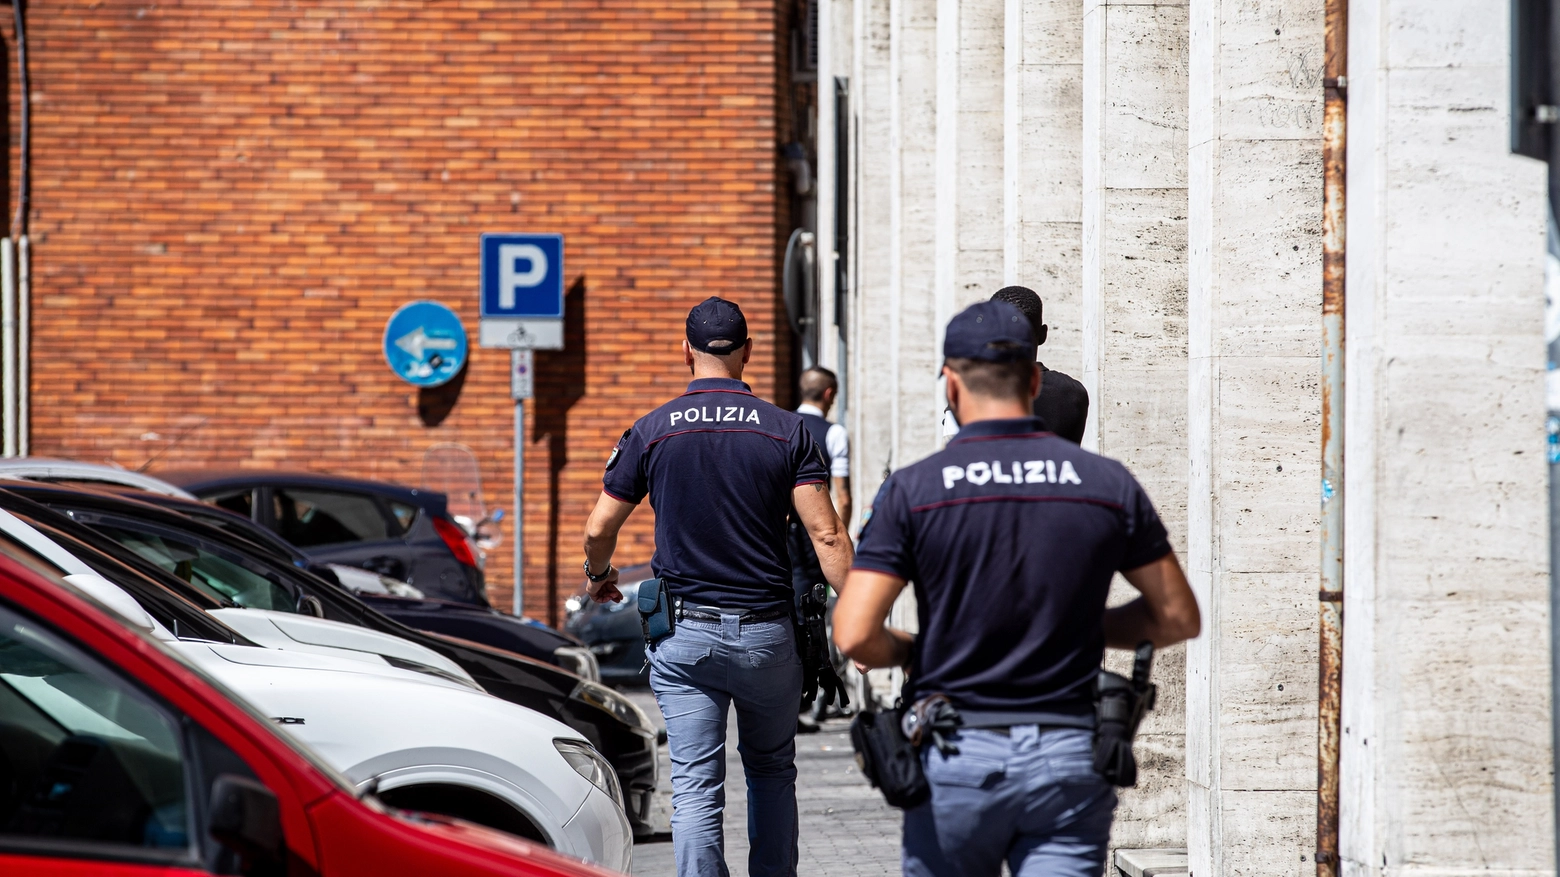 Polizia in azione nei pressi della stazione di Pisa (foto di repertorio)